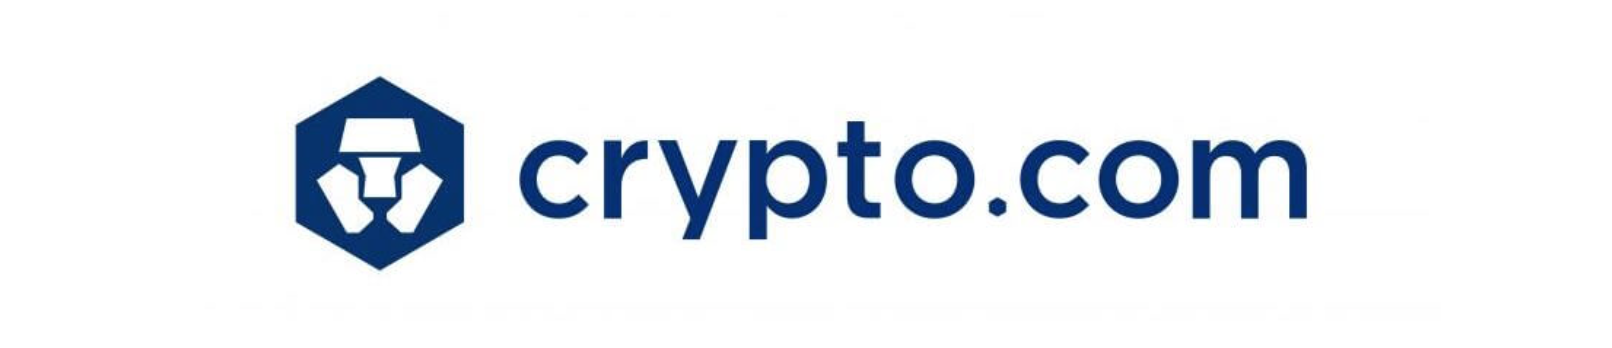 Crypto.com er en plattform med et grensesnitt som skiller seg ut.